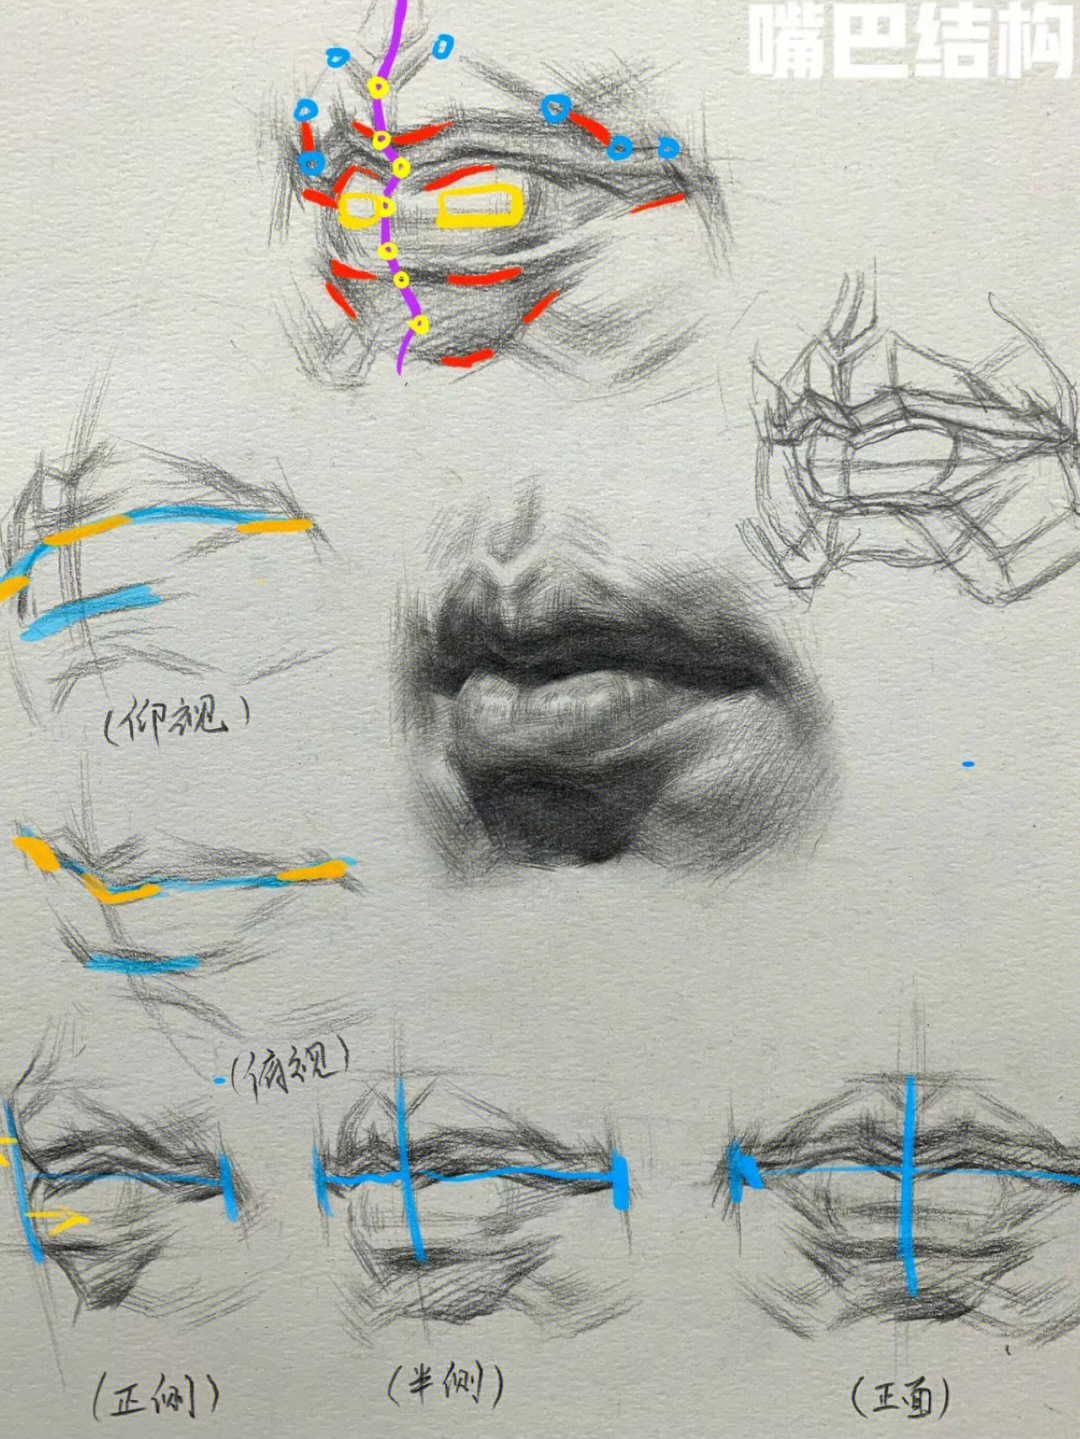 嘴唇解剖结构层次图片图片